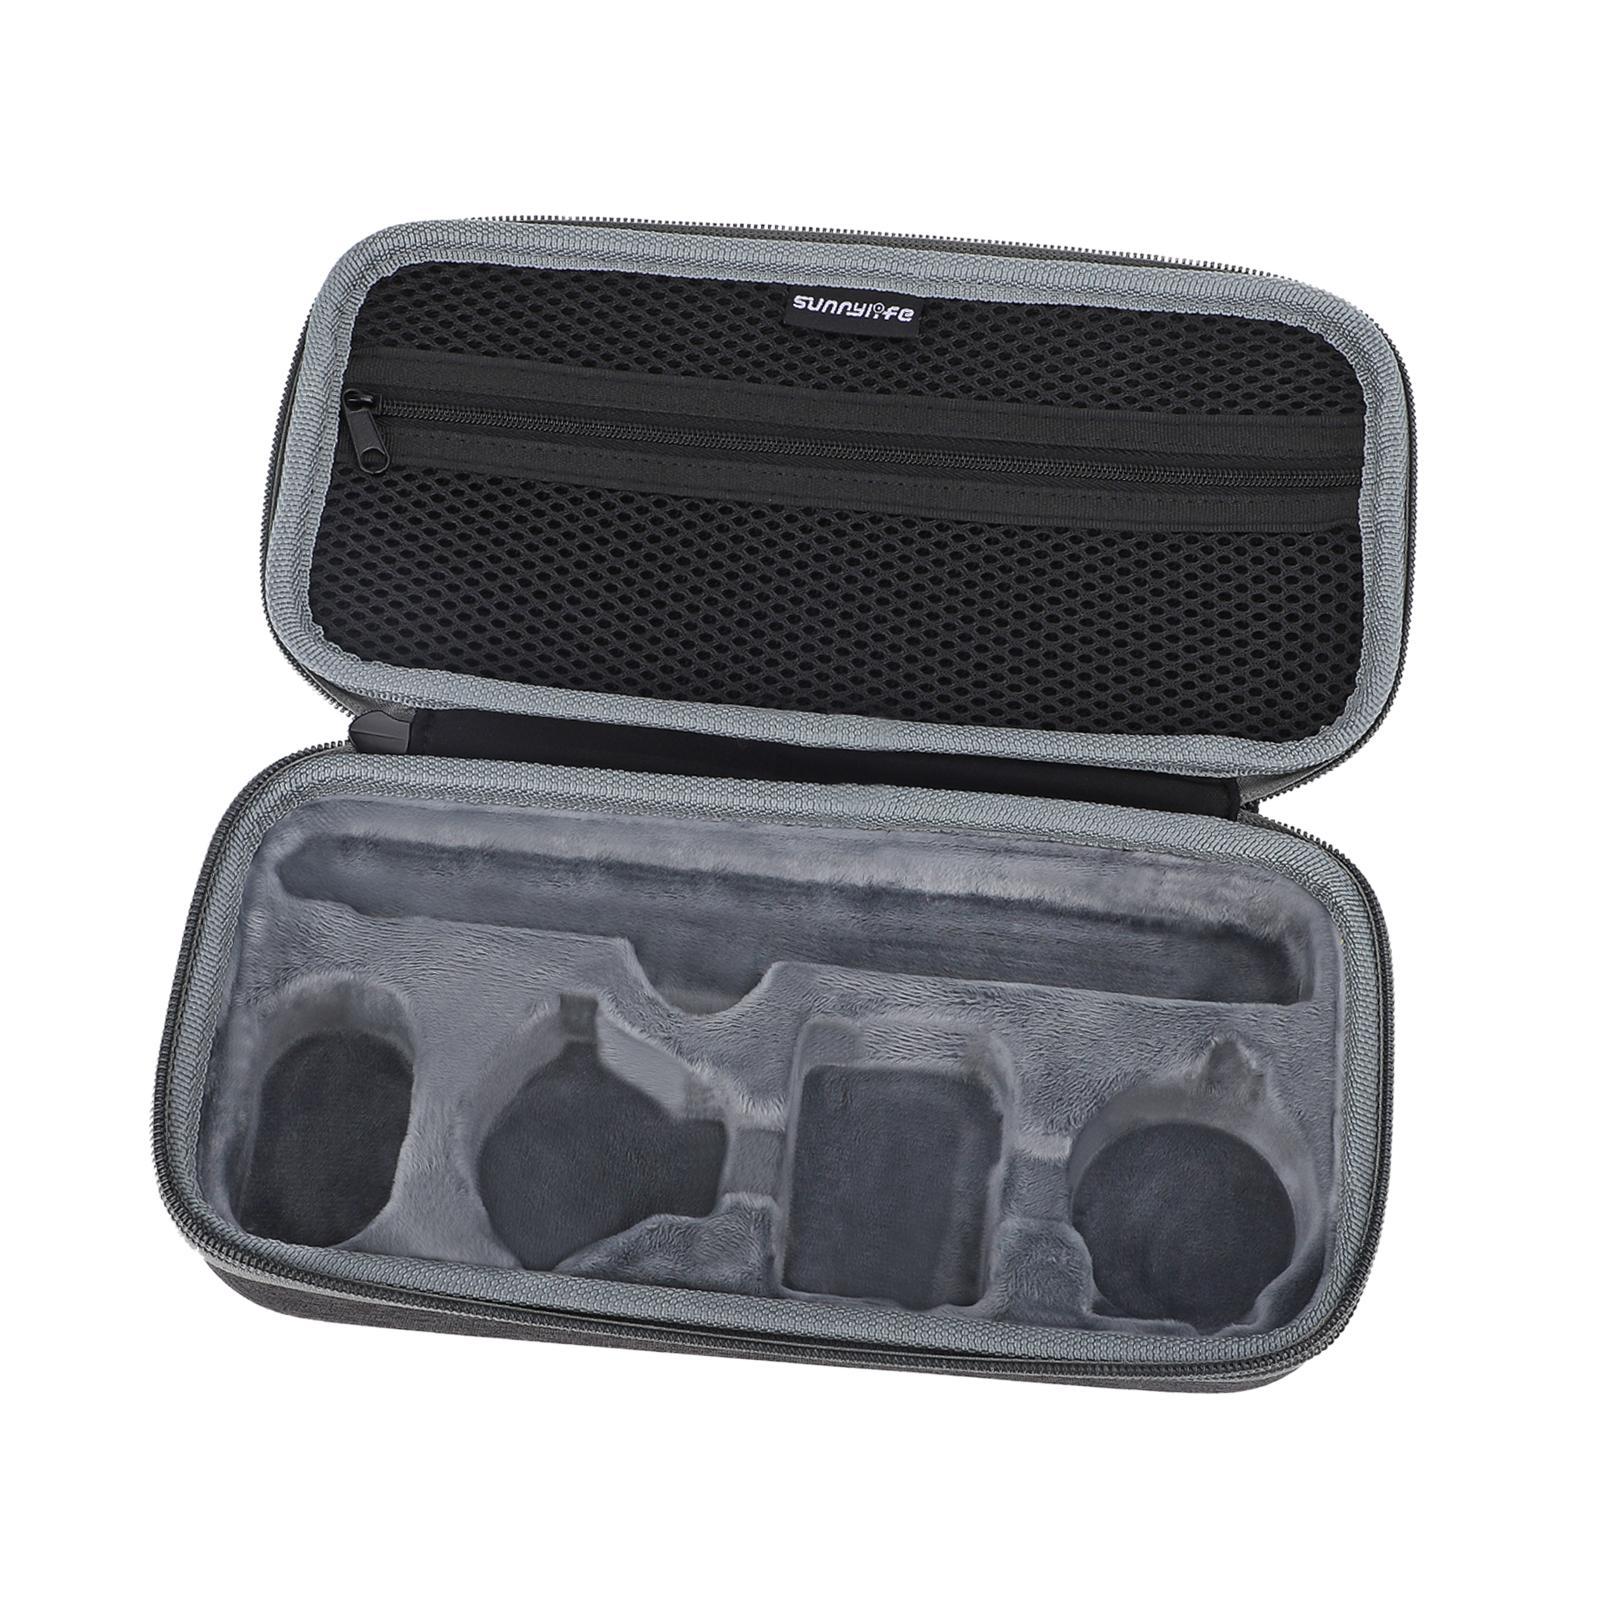 Camera Bag Portable Storage Box Duable Travel Case for Instant Camera Camera